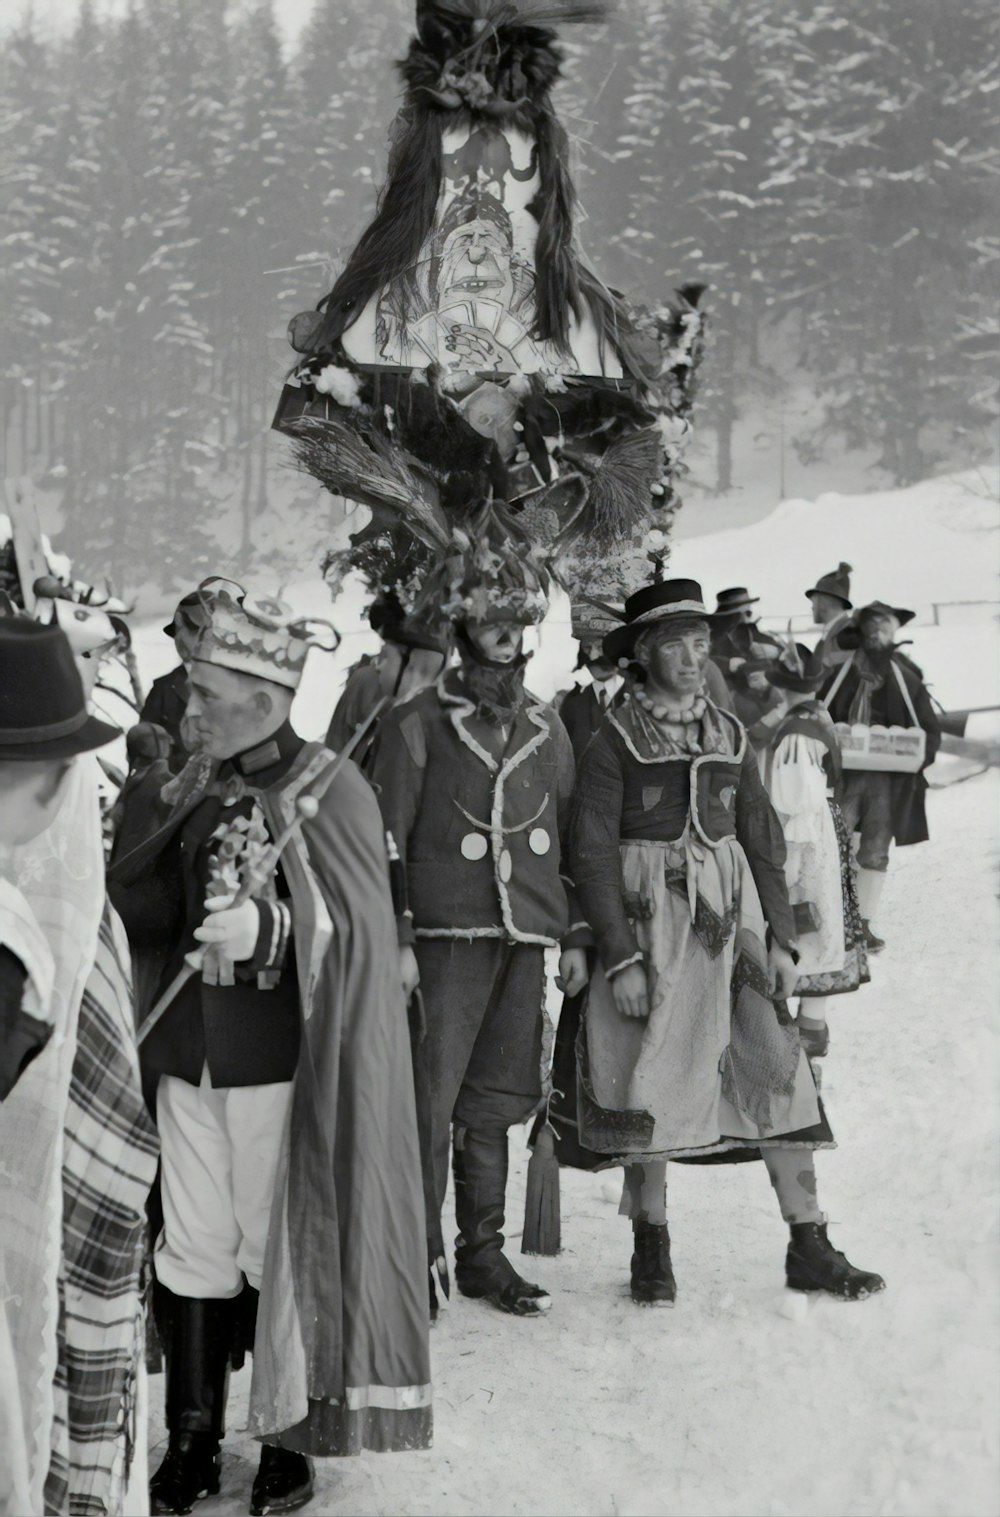 fotografia em tons de cinza de homens em pé na neve